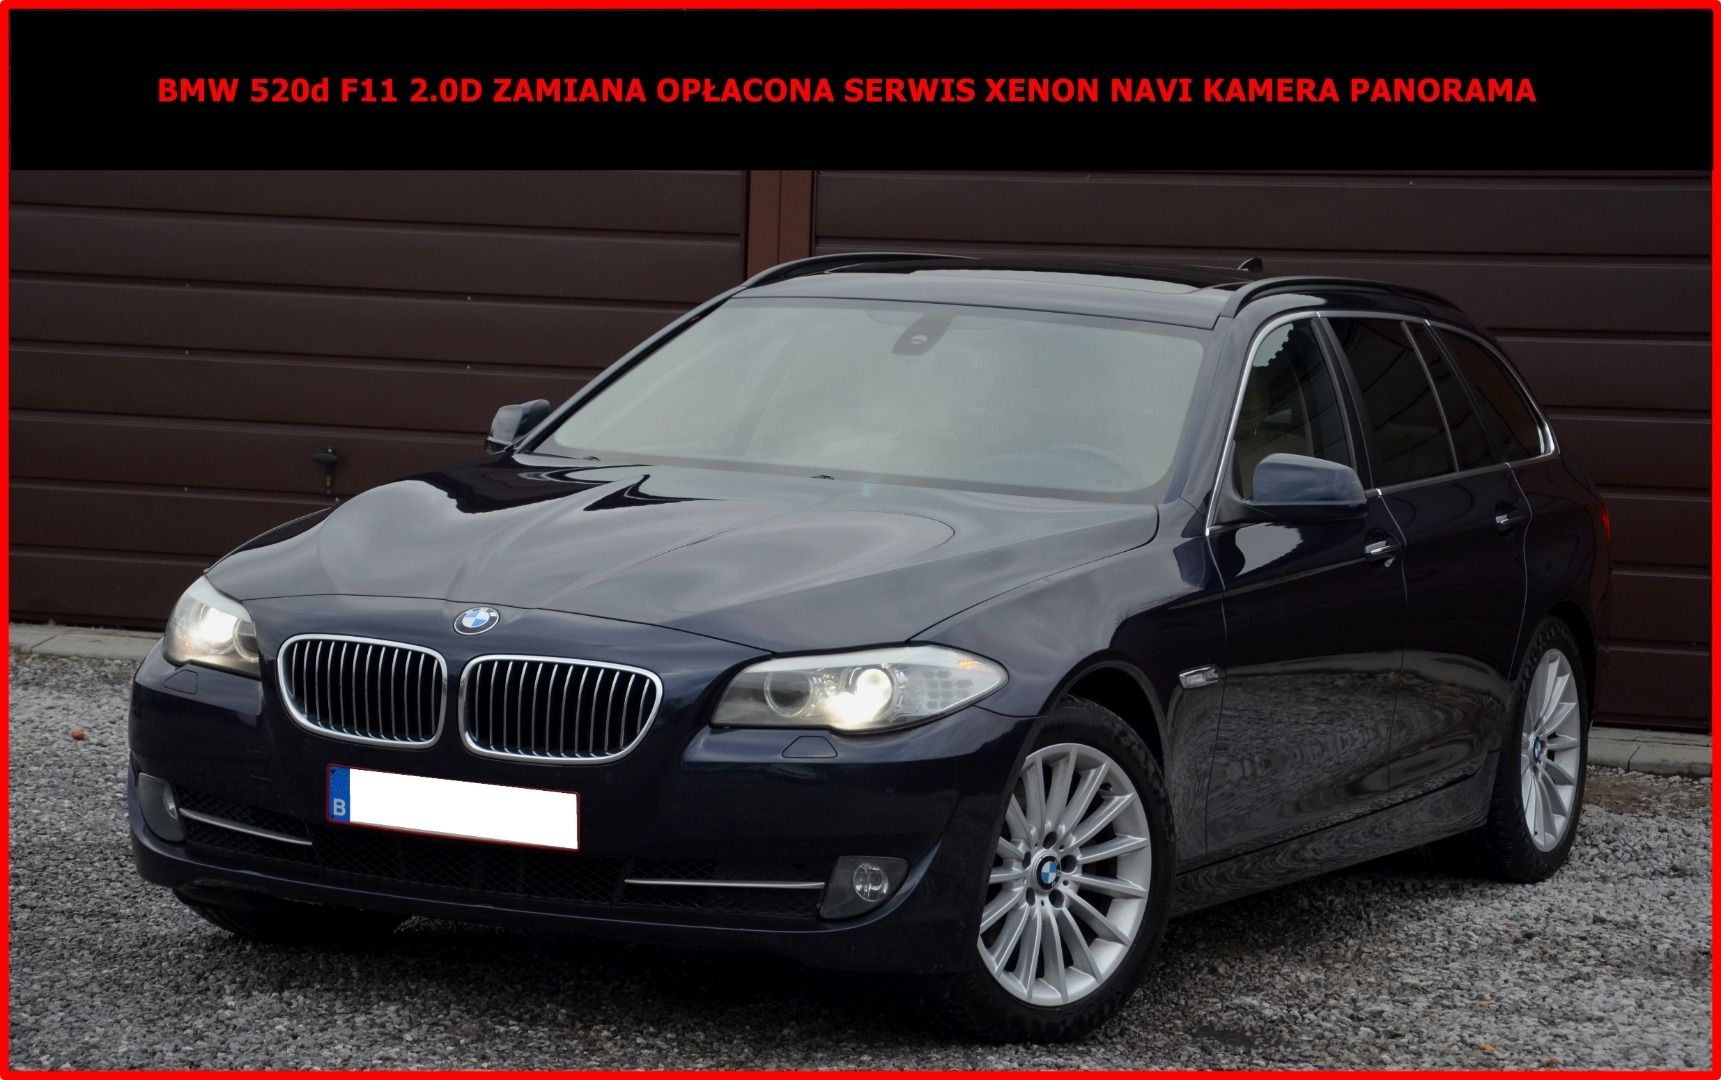 BMW 520d F11 2.0D 224tys km Zamiana Opłacona Serwis Xenon Panorama